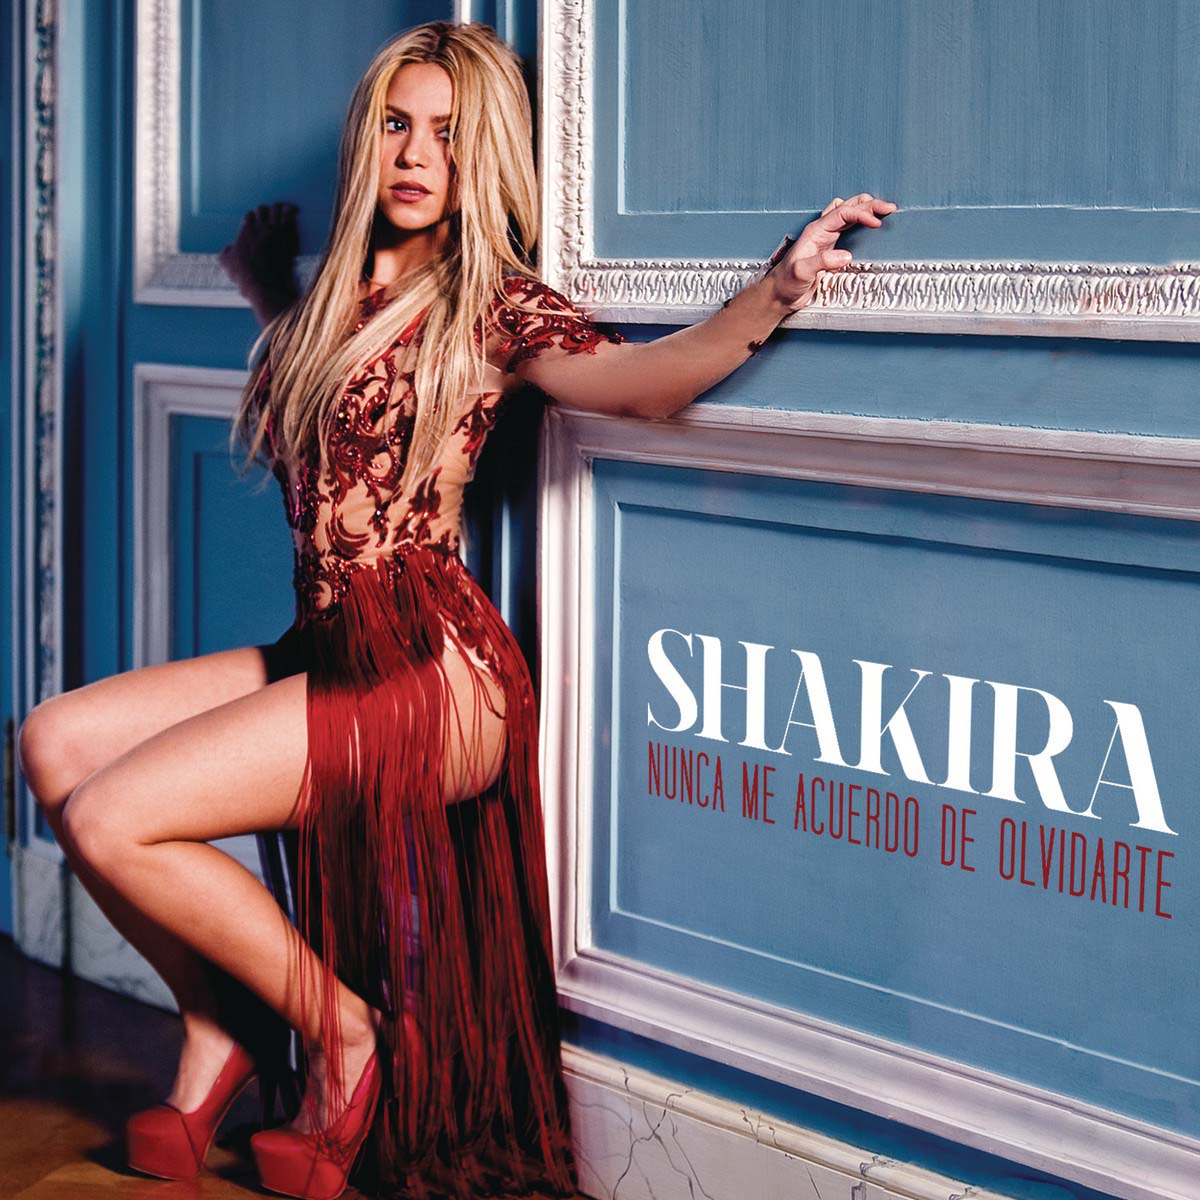 Nunca me acuerdo de olvidarte, nueva canción de Shakira